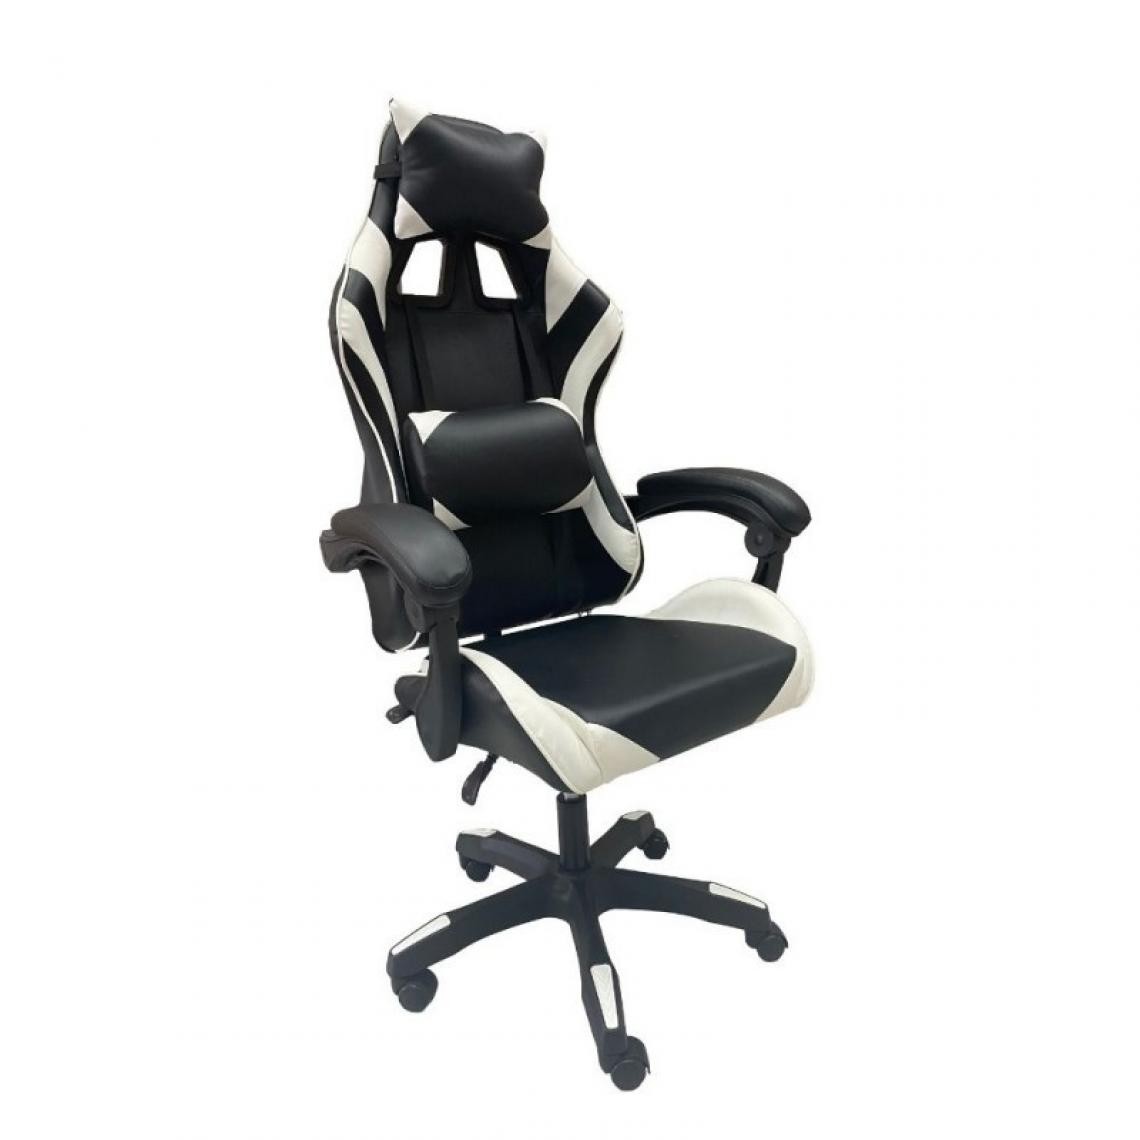 Webmarketpoint - Chaise de bureau gaming MEK blanc noir 68x50x h127 cm - Bureaux